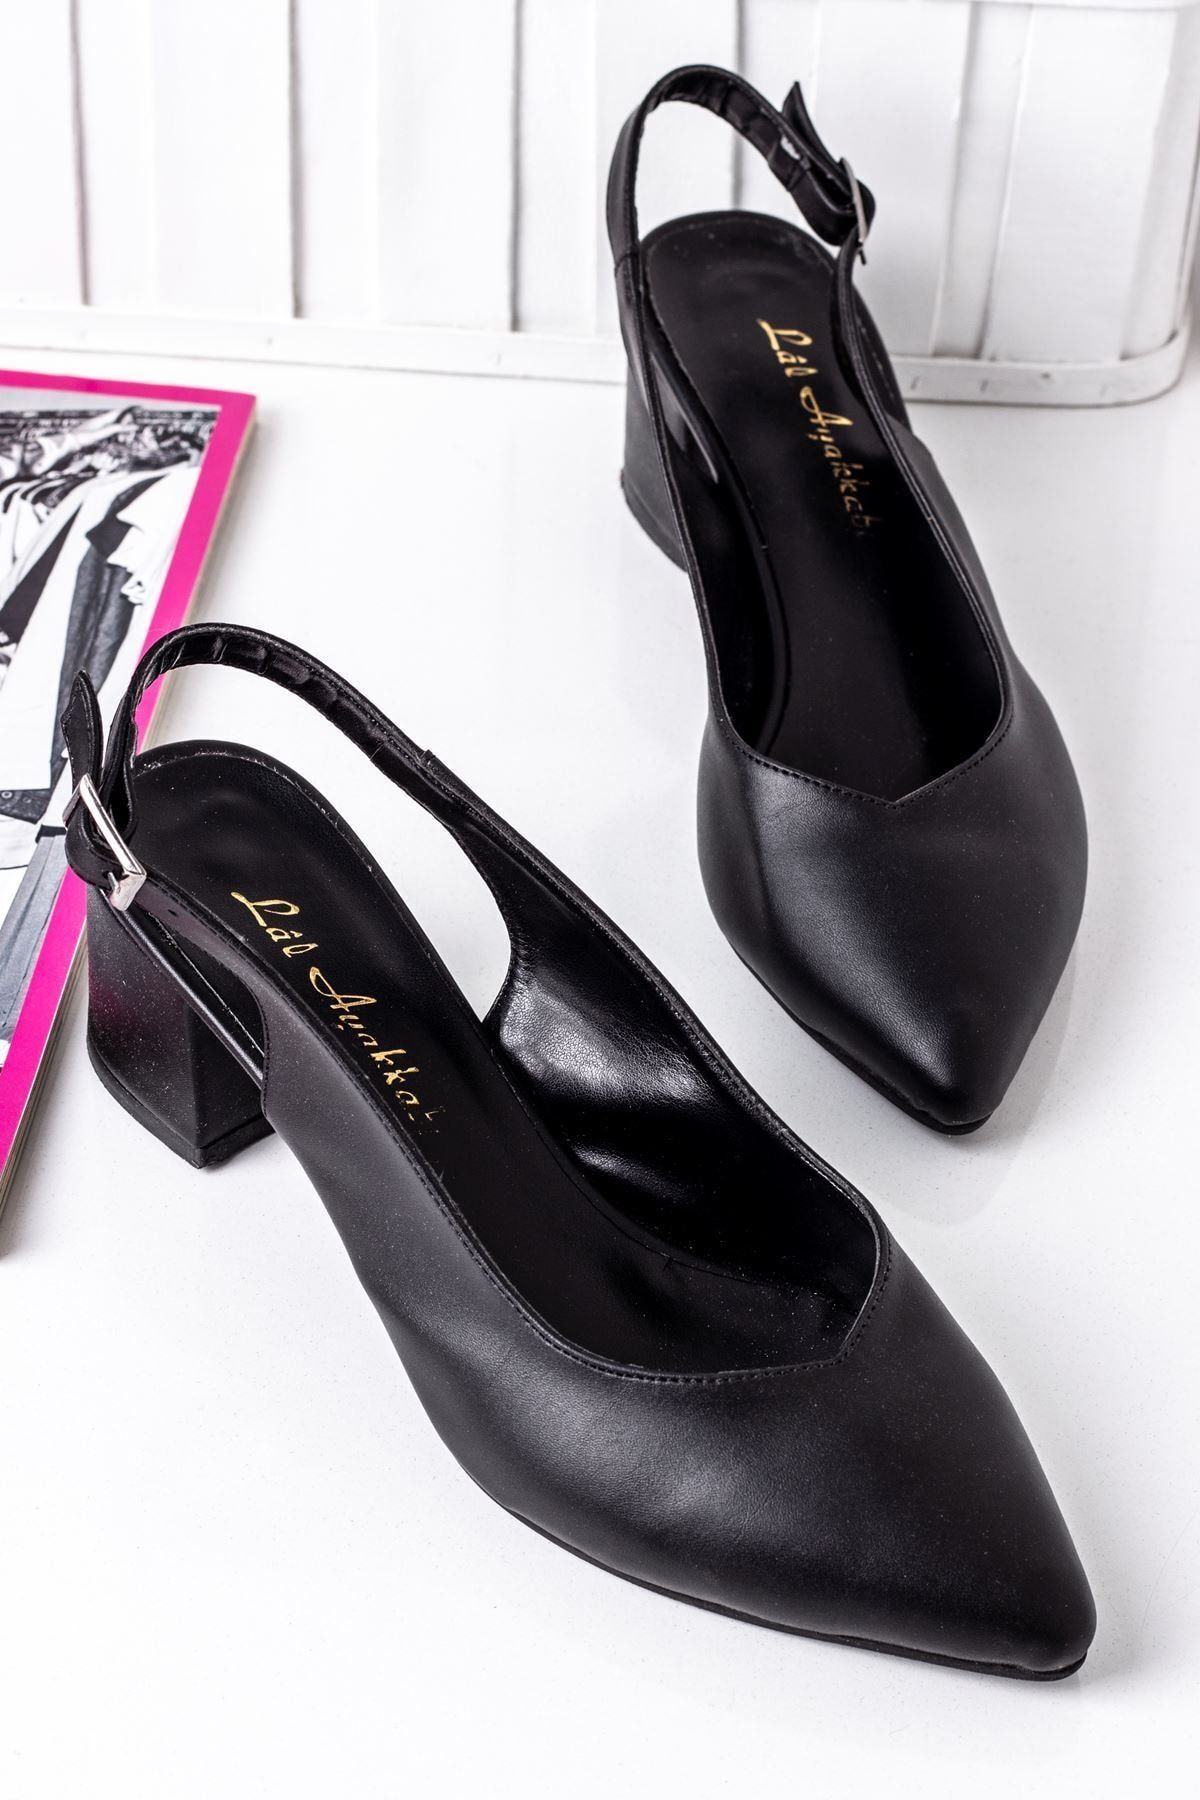 LAL SHOES & BAGS 5 Cm Topuklu Bayan Topuklu Ayakkabı-siyah